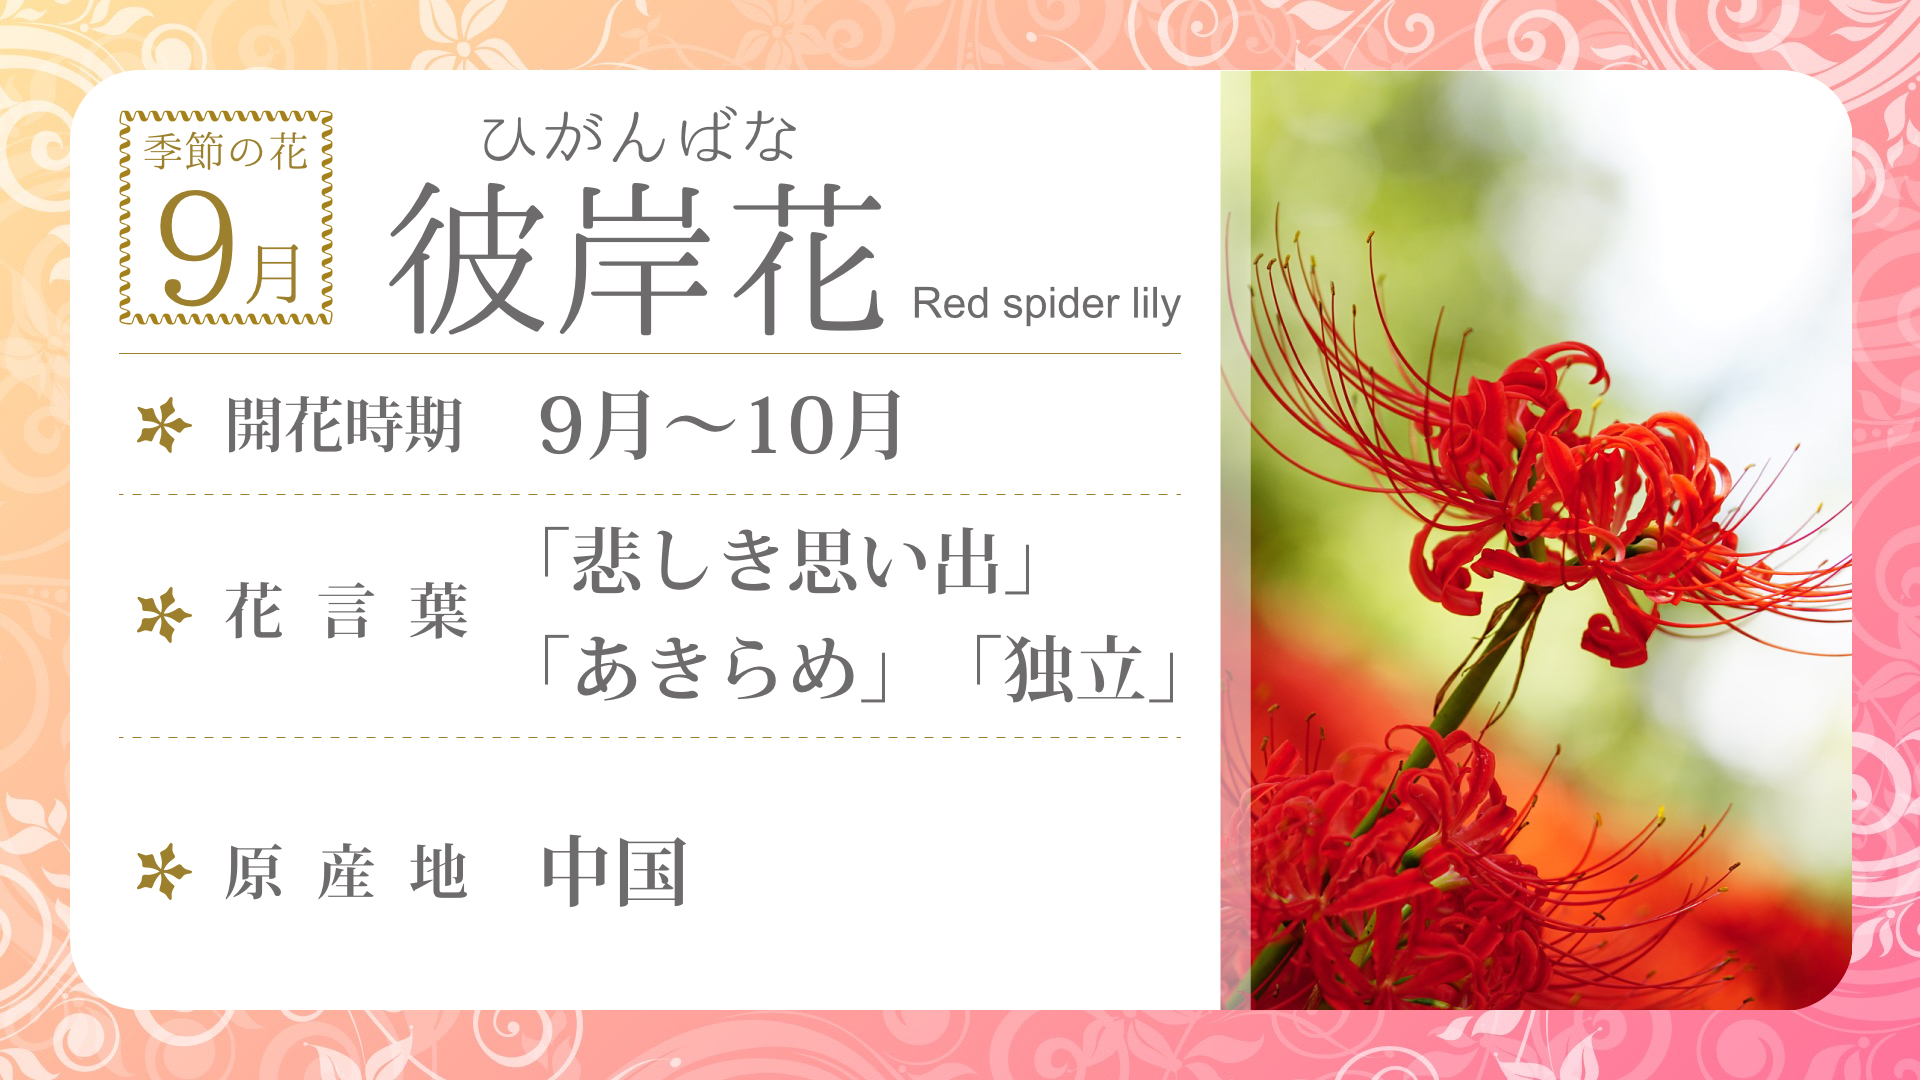 Nh Flower09 季節の花 9月 デジタルサイネージ配信コンテンツ